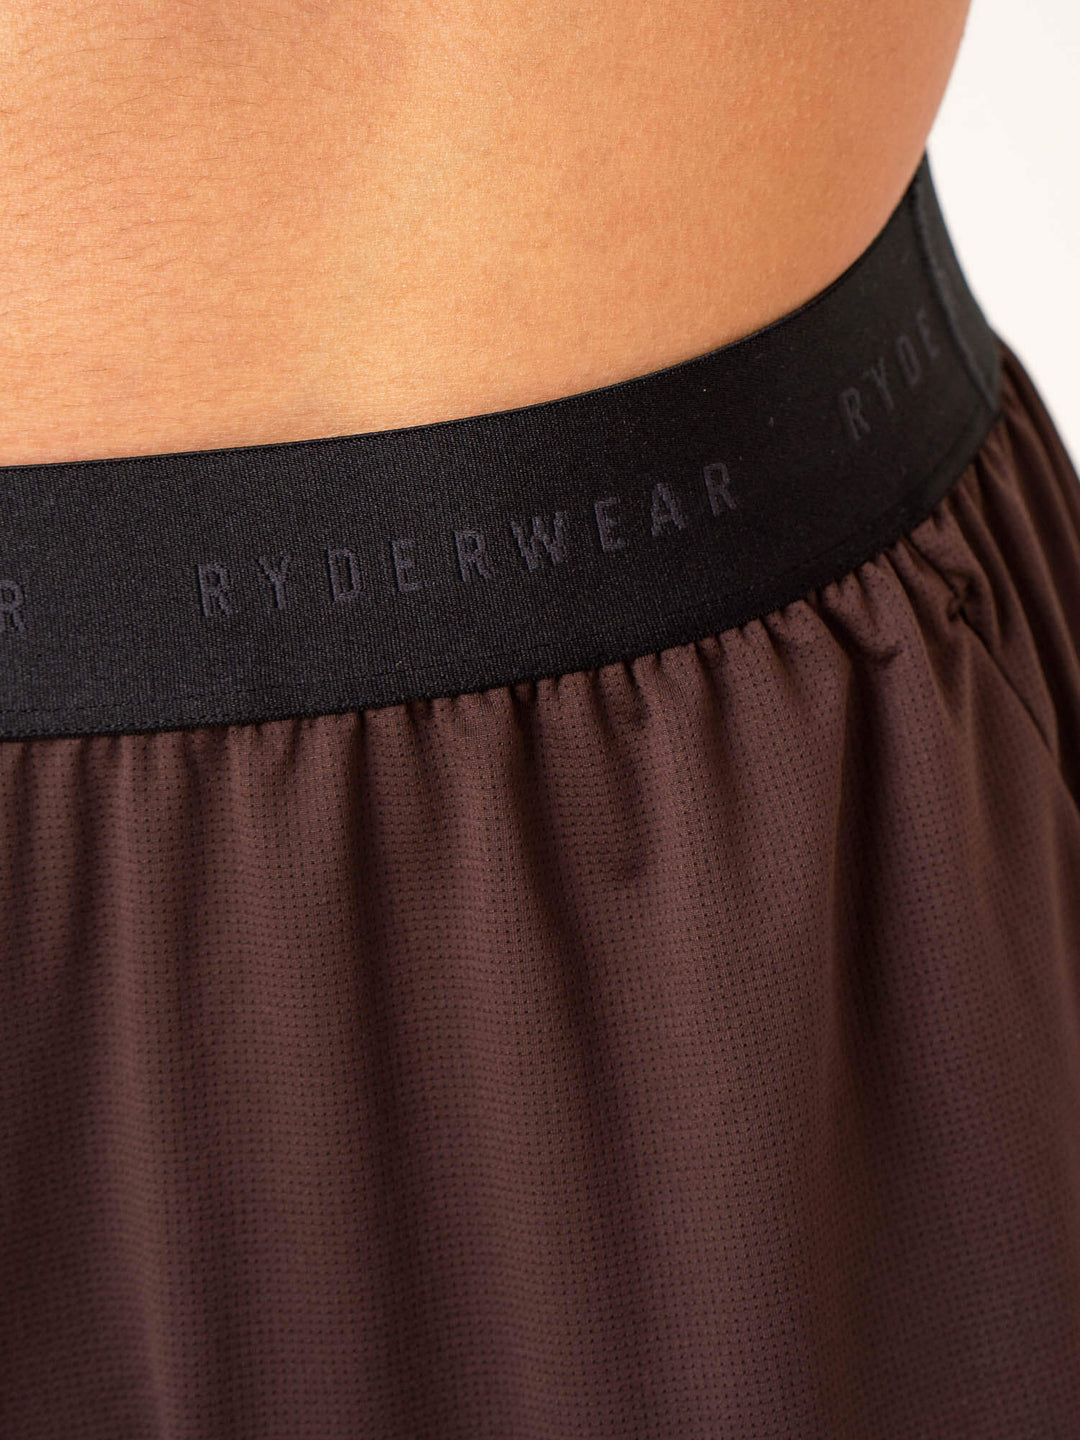 Terrain Mesh Gym Shorts - Dark Oak Clothing Ryderwear 